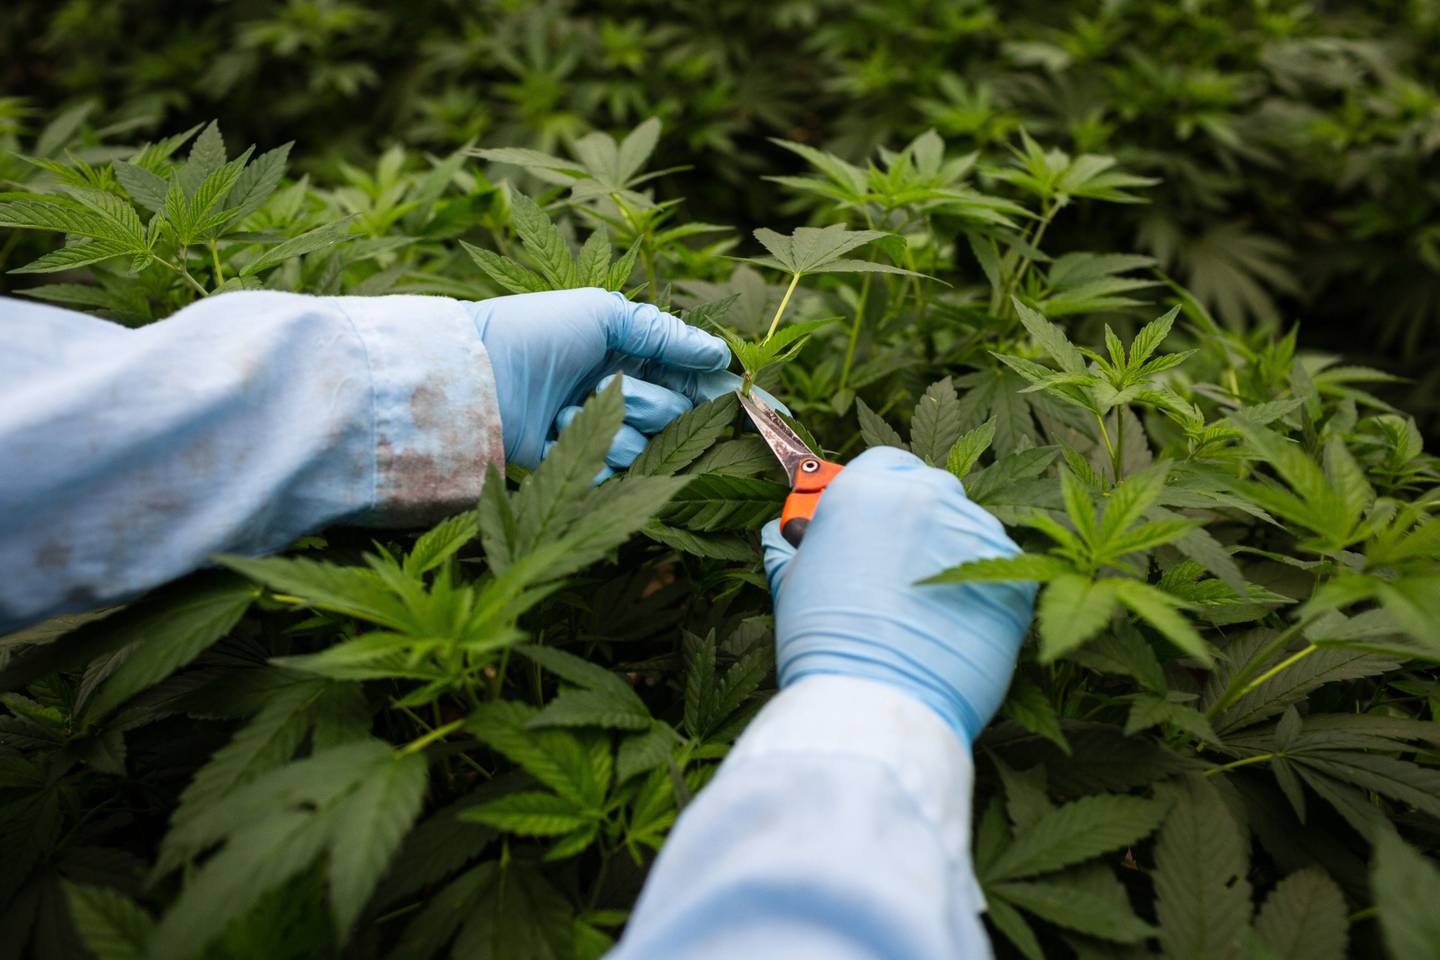 Un empleado hace cortes de una planta madre de marihuana para cultivar clones en una instalación en Colombia.dfd